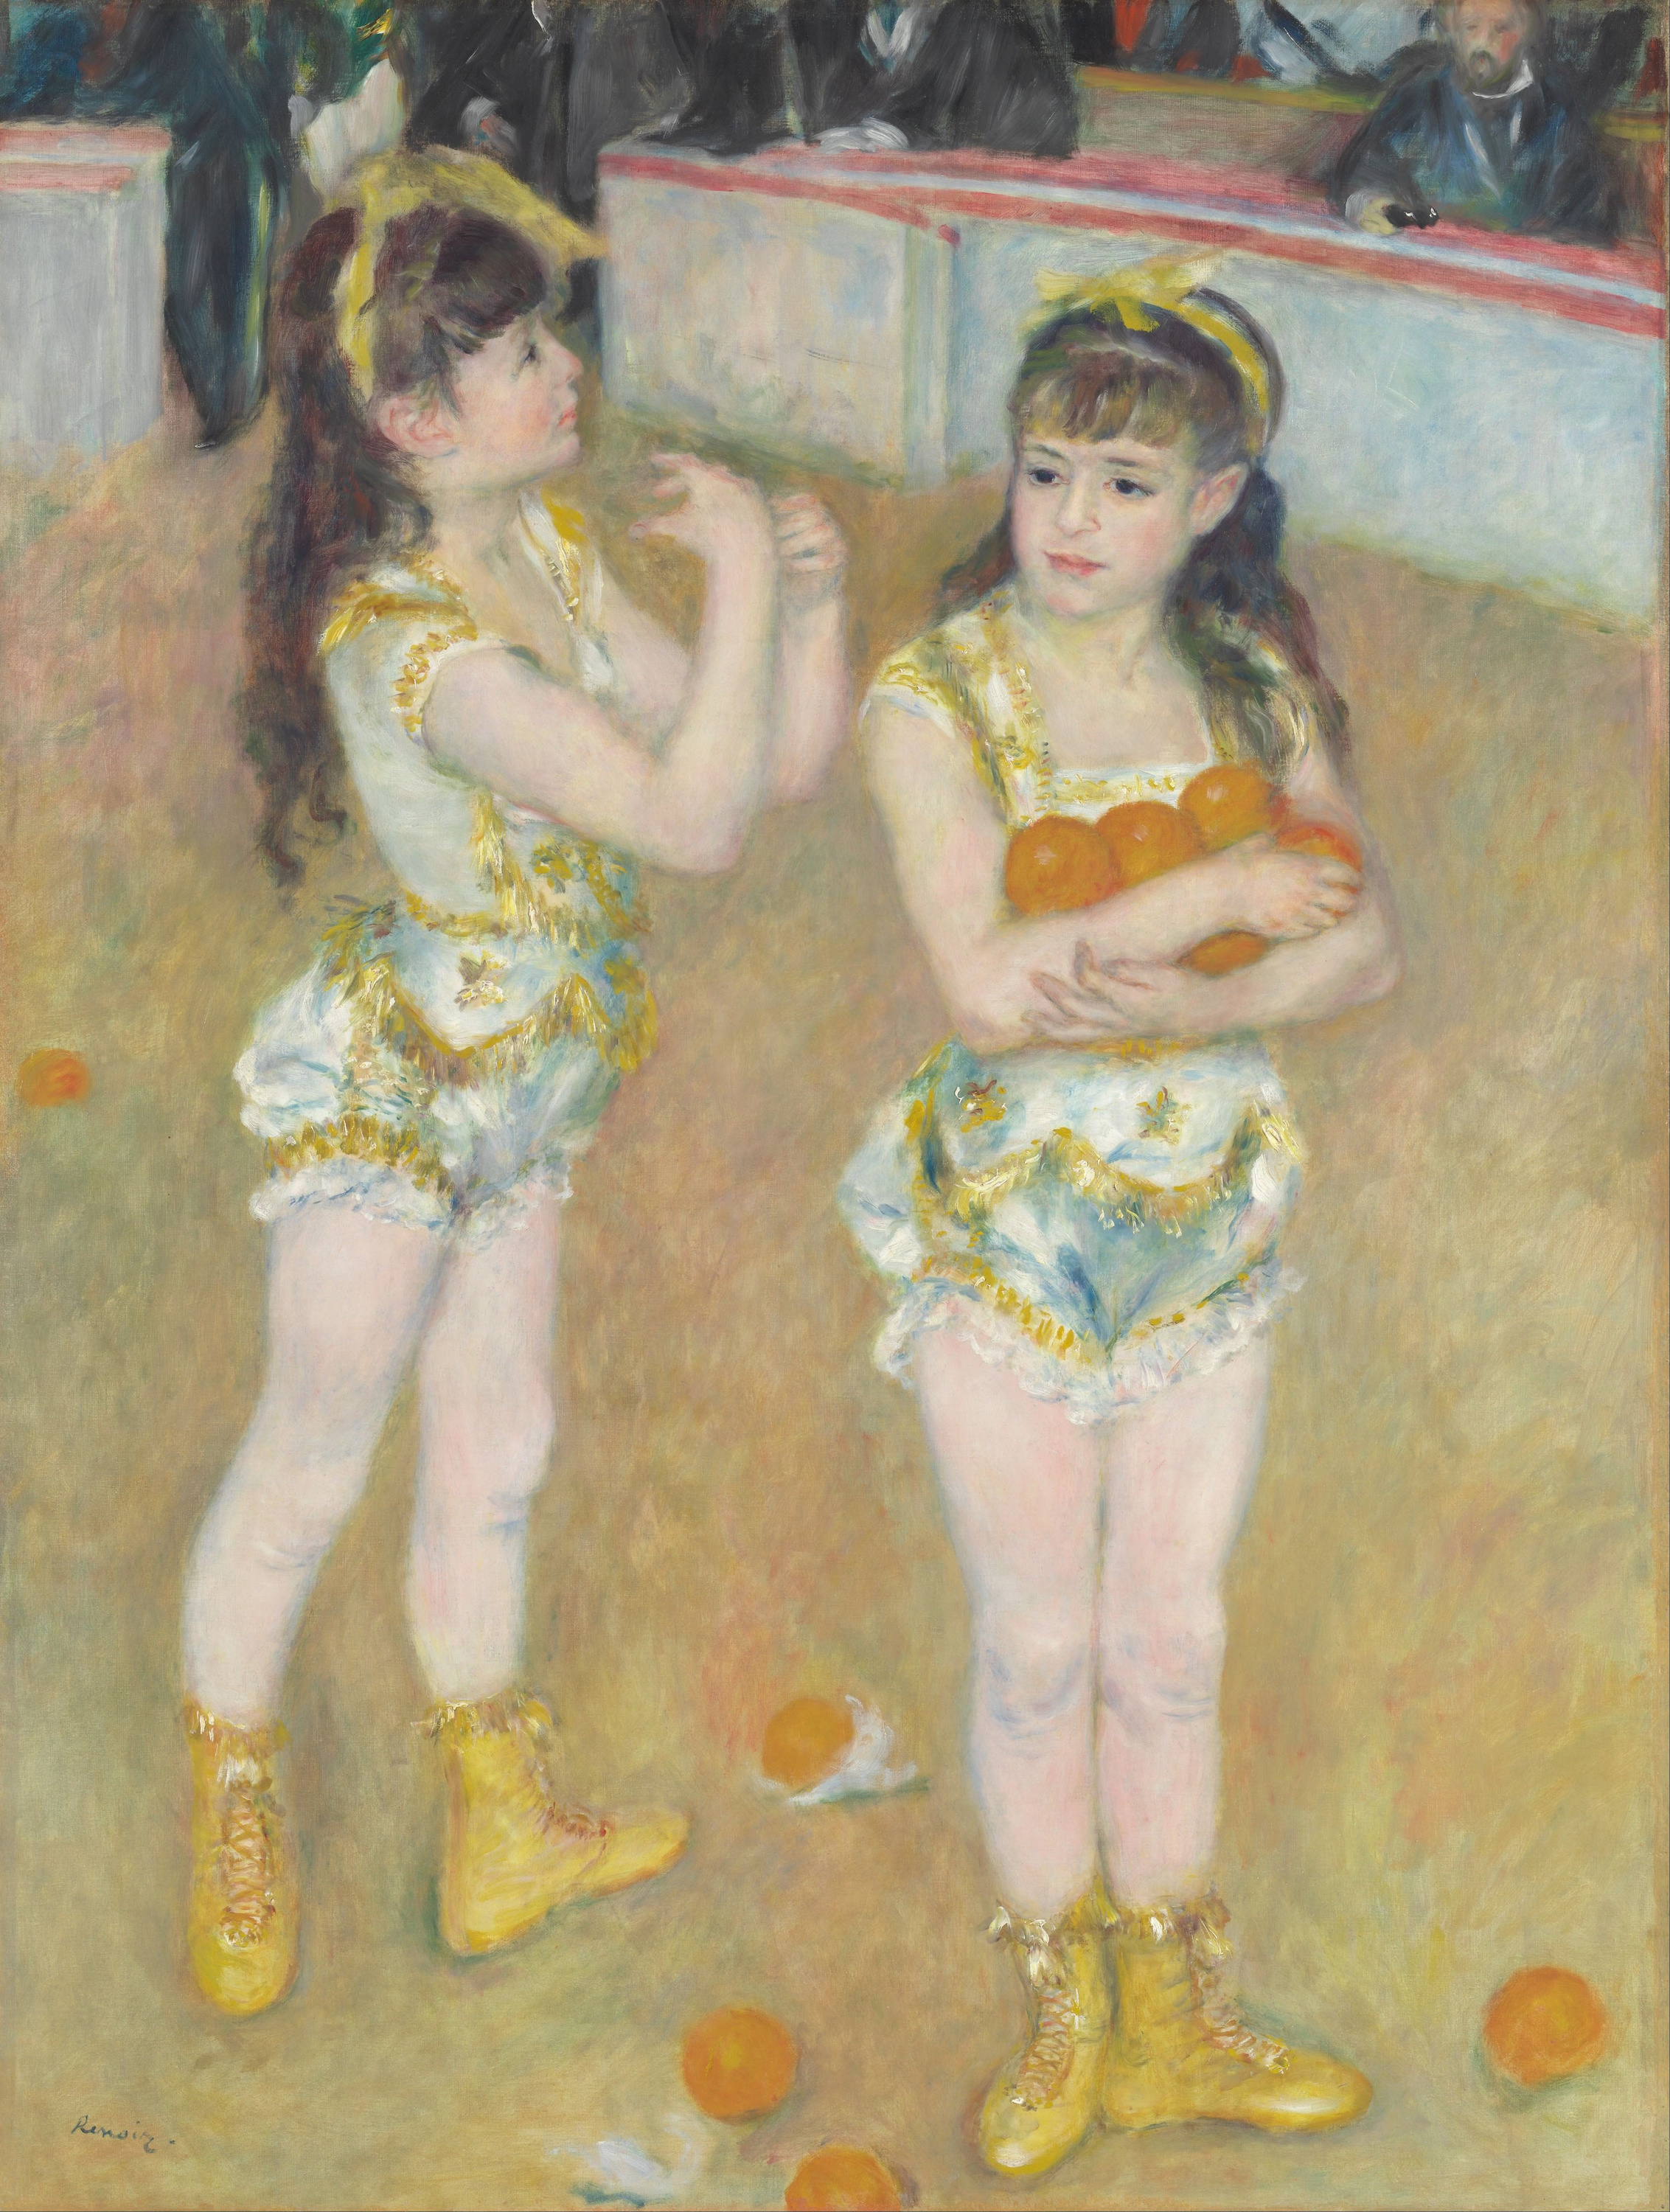 آکروبات باز ها در سیرک فرناندو (فرانسیسکا و آنجلینا وارتنبرگ) by Pierre-Auguste Renoir - 1879 - 131.2 × 99.2 cm 